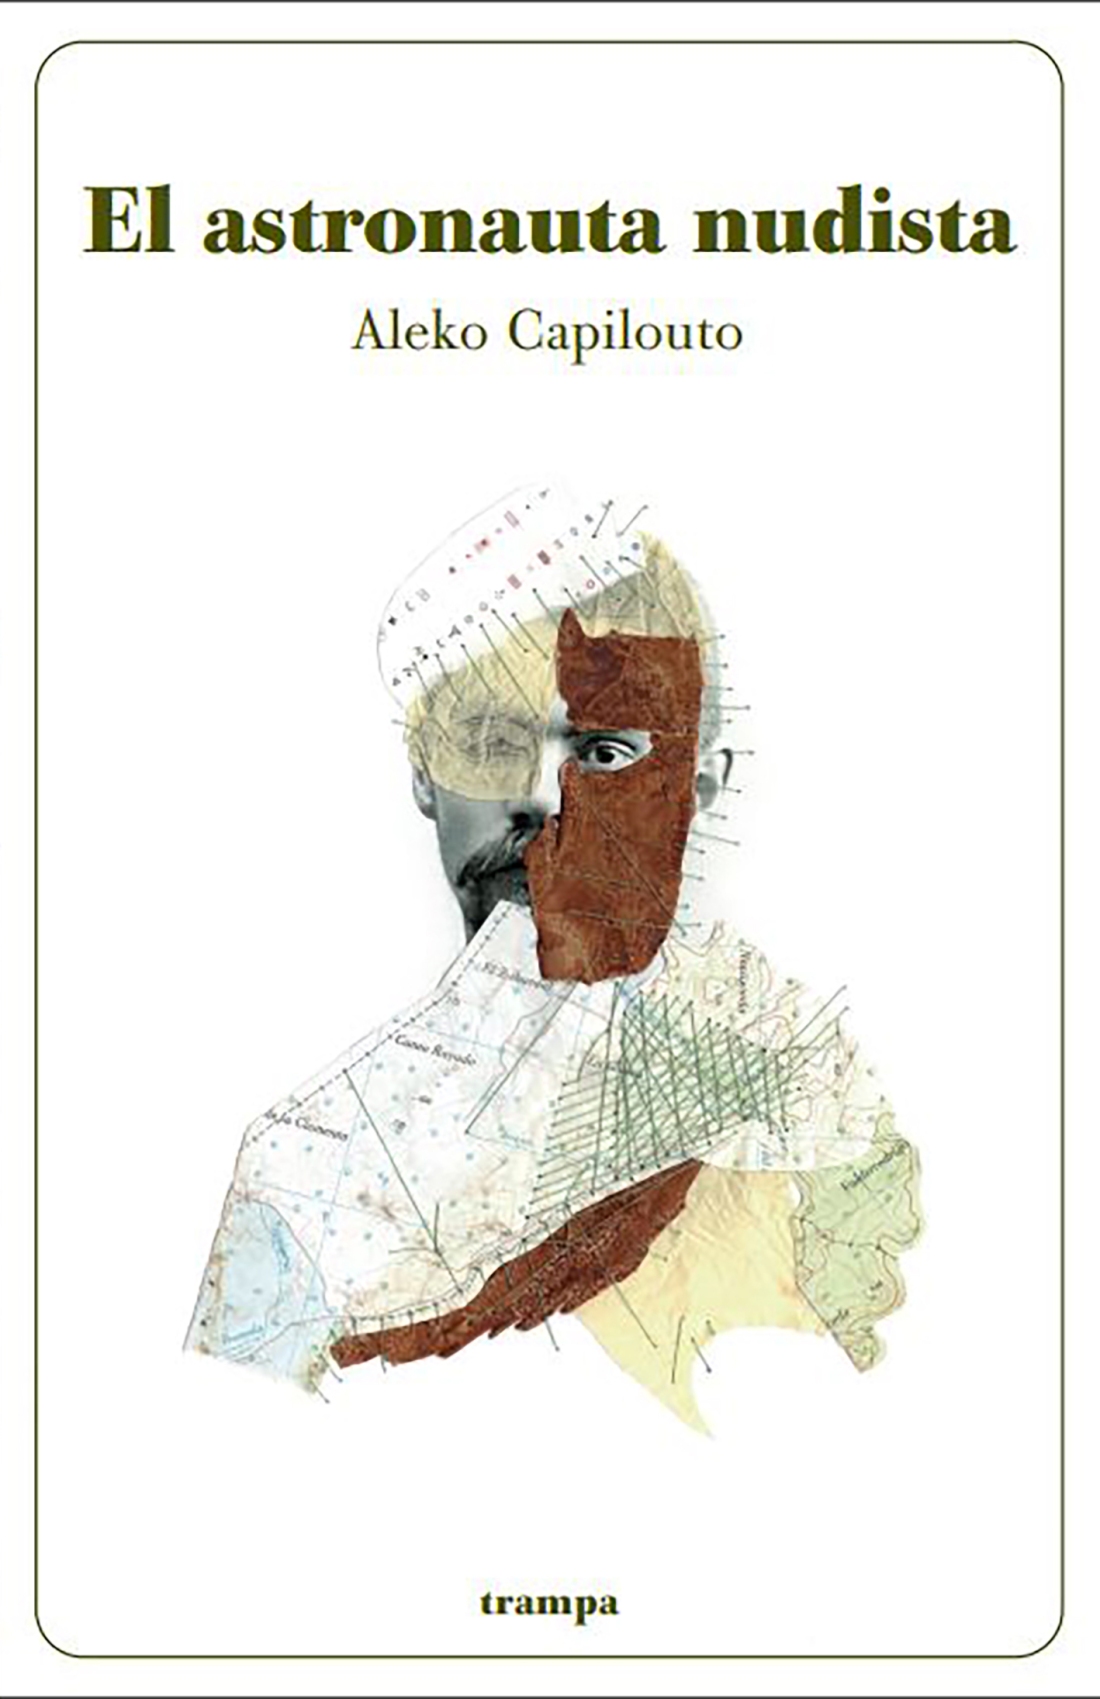 El astronauta nudista, de Aleko Capilouto (Trampa ediciones, 2020) (collage de Marisa Maestre)